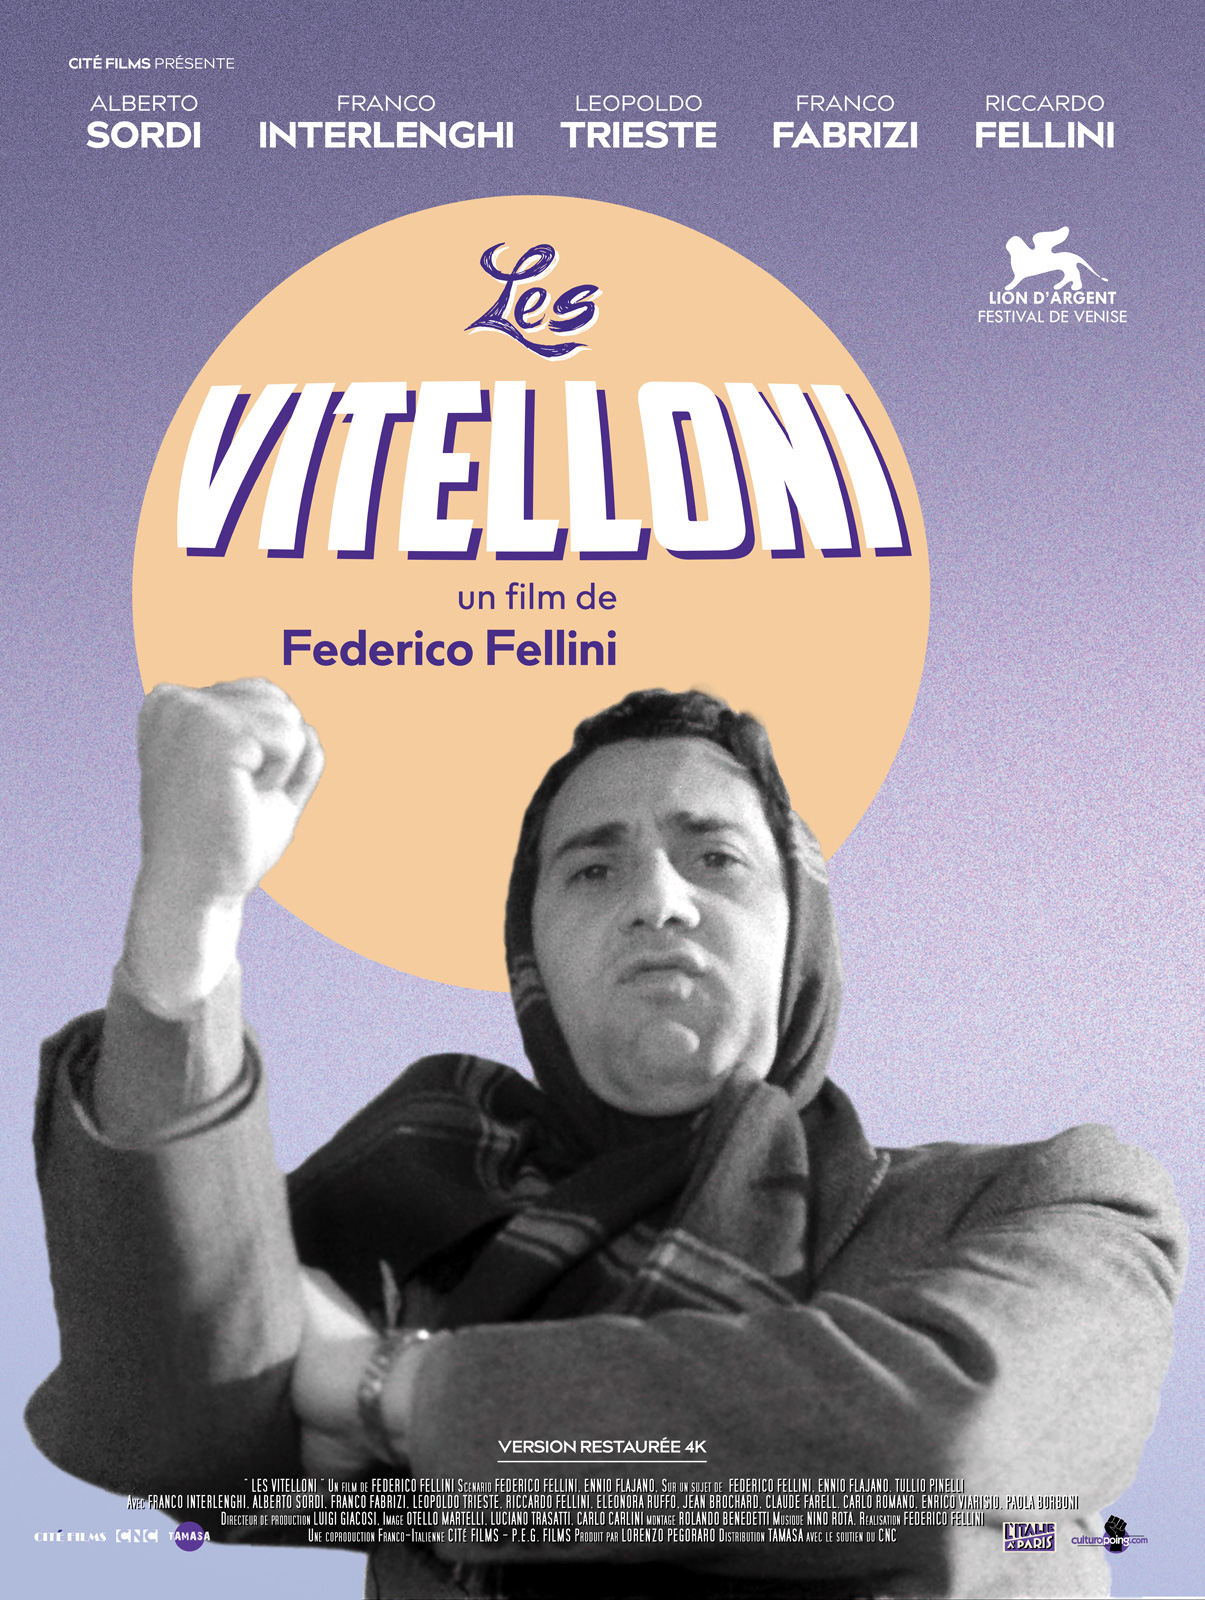 Les Vitelloni streaming fr